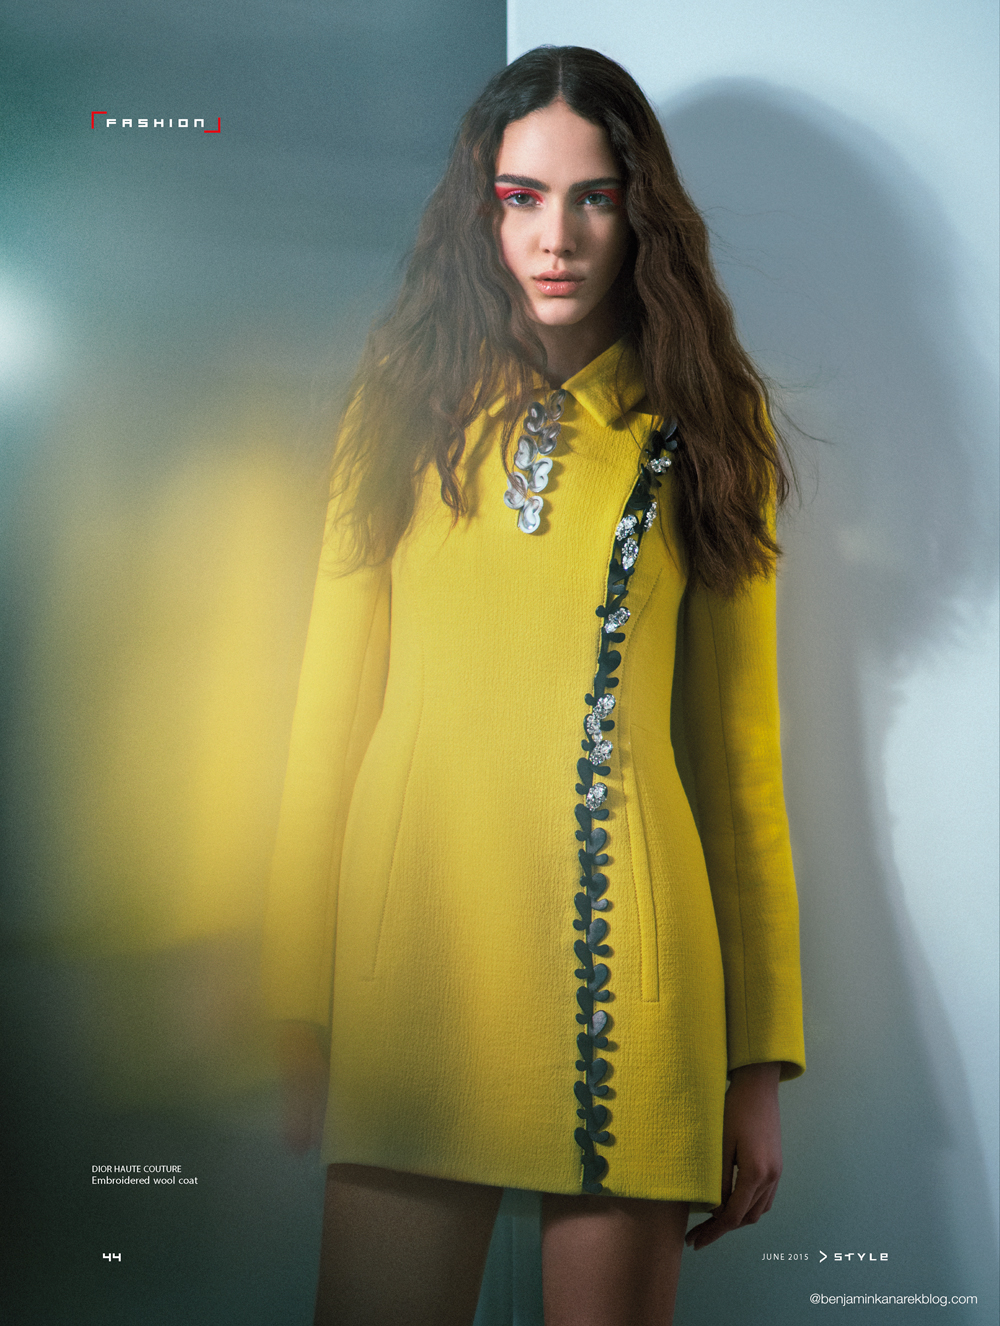 Tako Natsvlishvili in Christian Dior Couture for SCMP Style © Benjamin Kanarek